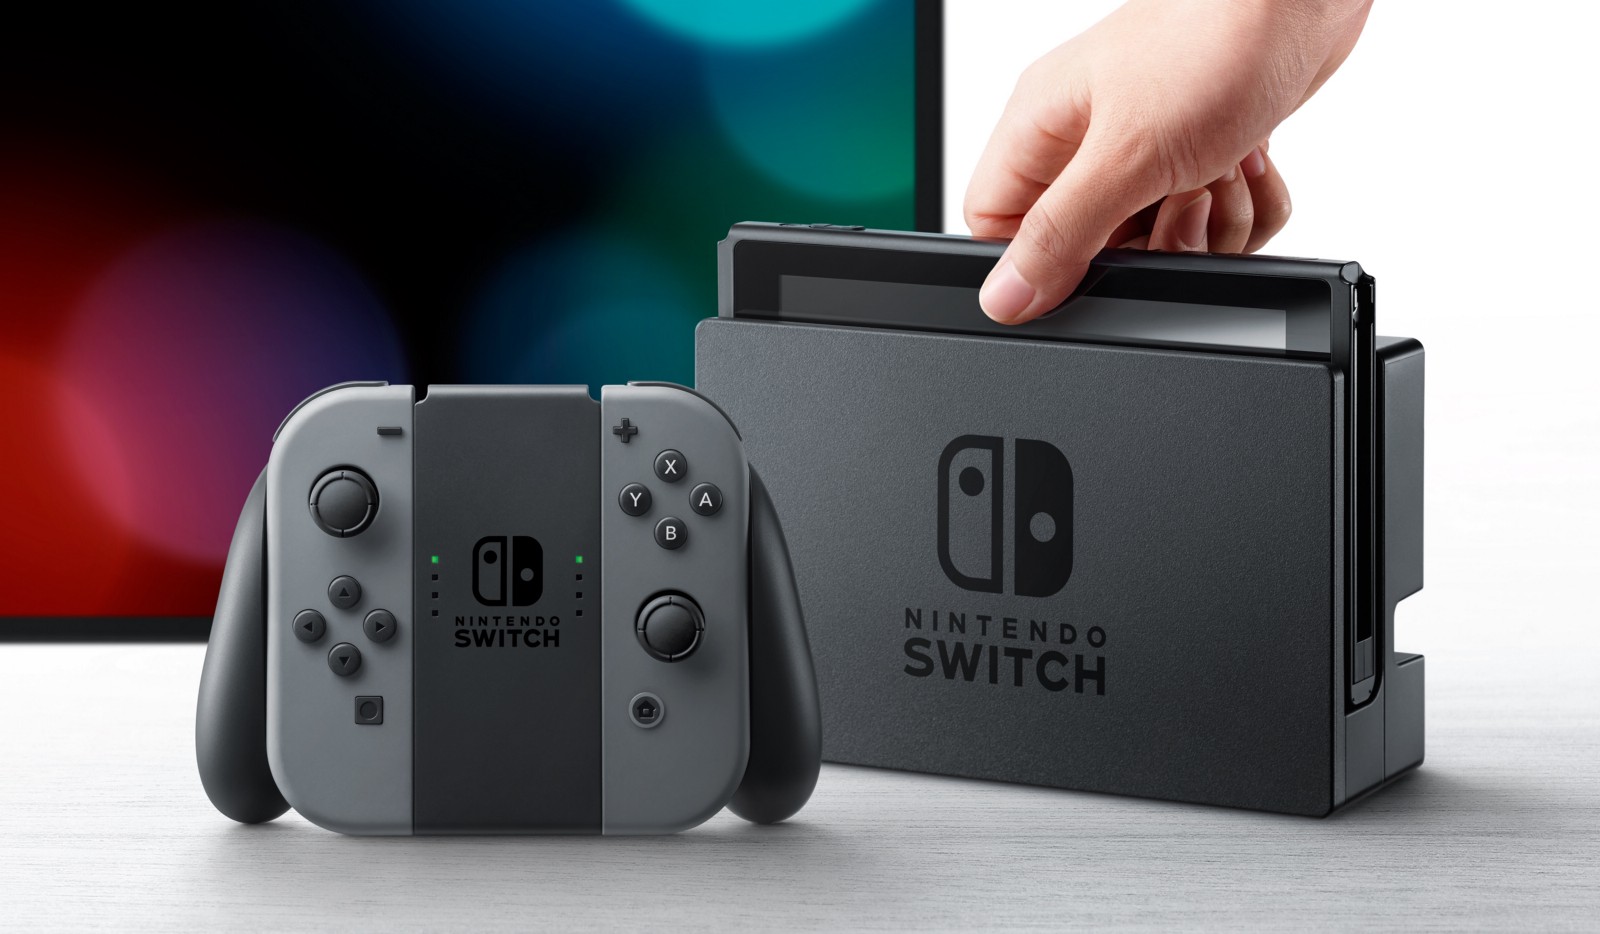 任天堂は既に『Nintendo Switch』の改良型を開発中で2018年に発売という噂。品薄の原因はこれ？ - 任天堂